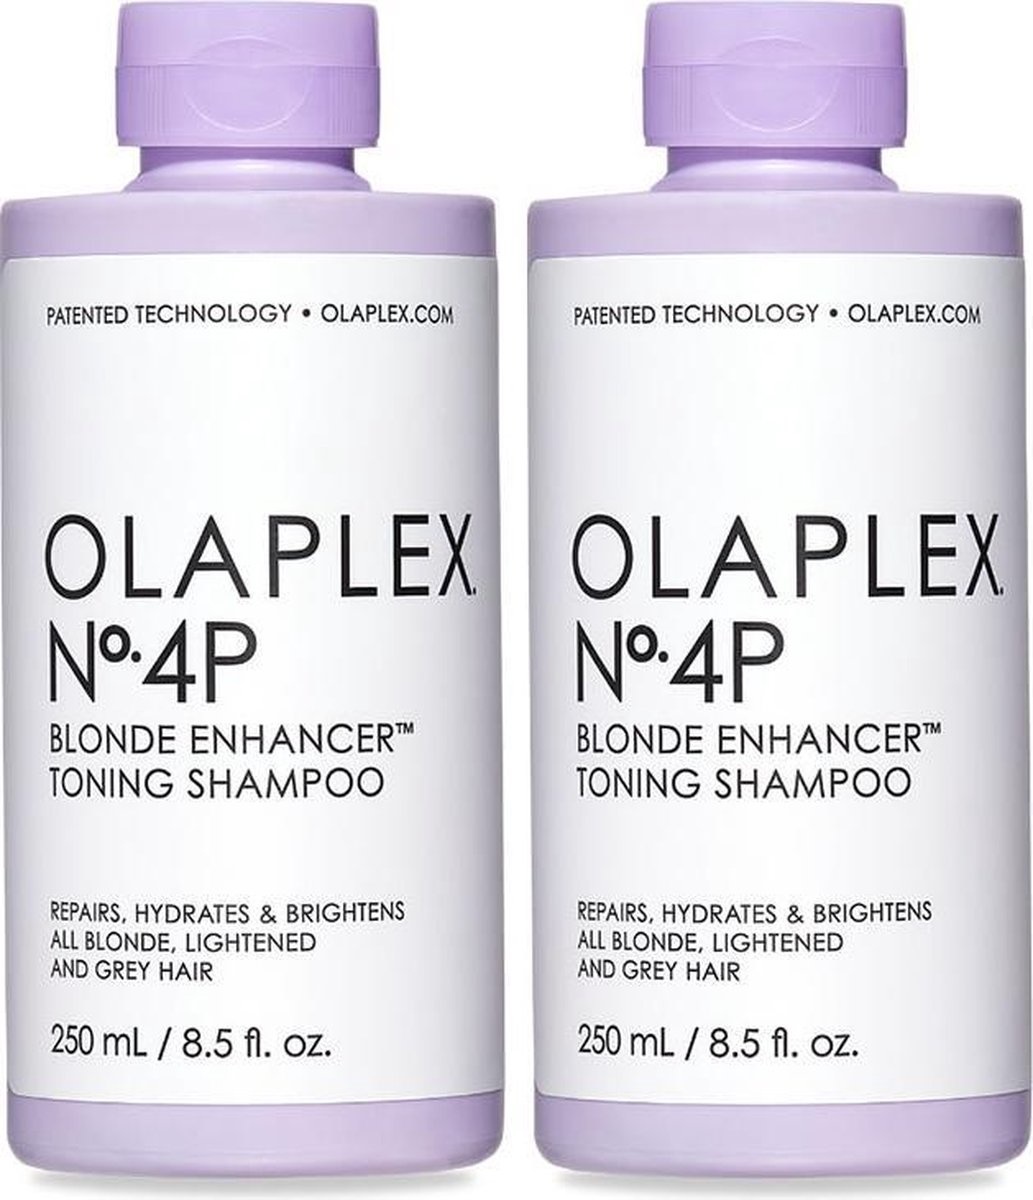 Olaplex No.4P Blonde Enhancer Toning Shampoo Duo set